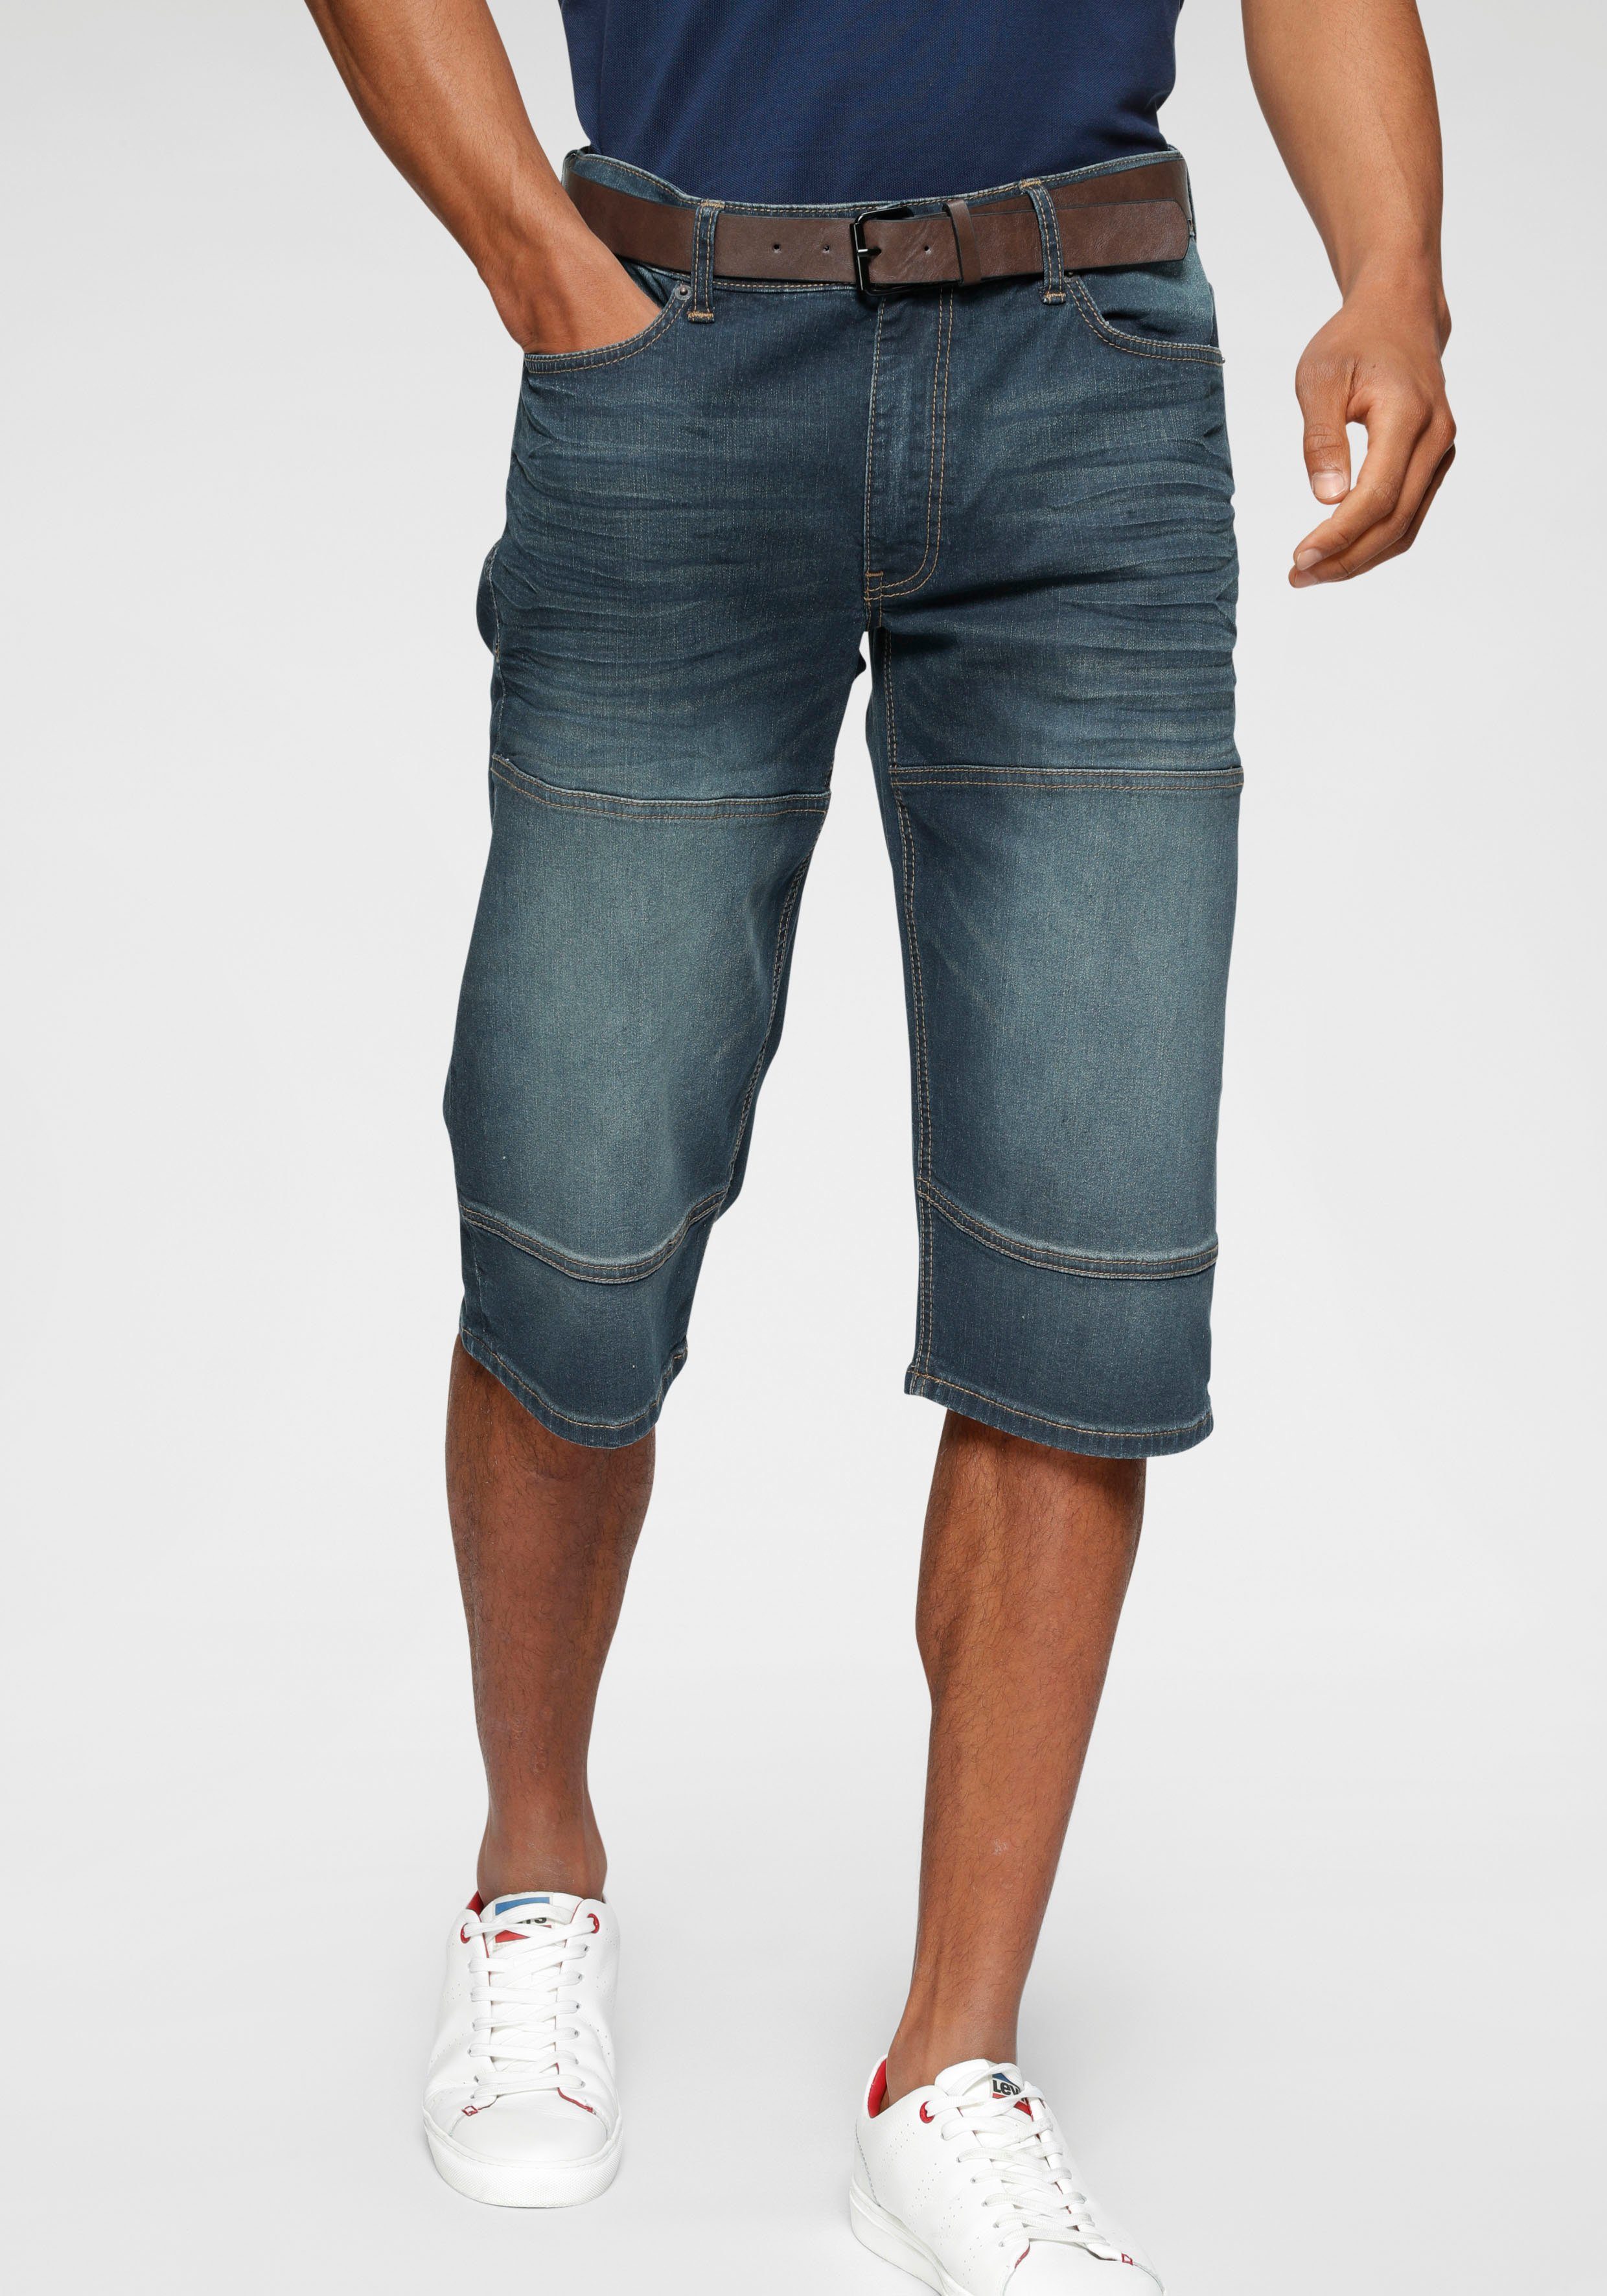 Herren Jeans Shorts online kaufen | OTTO